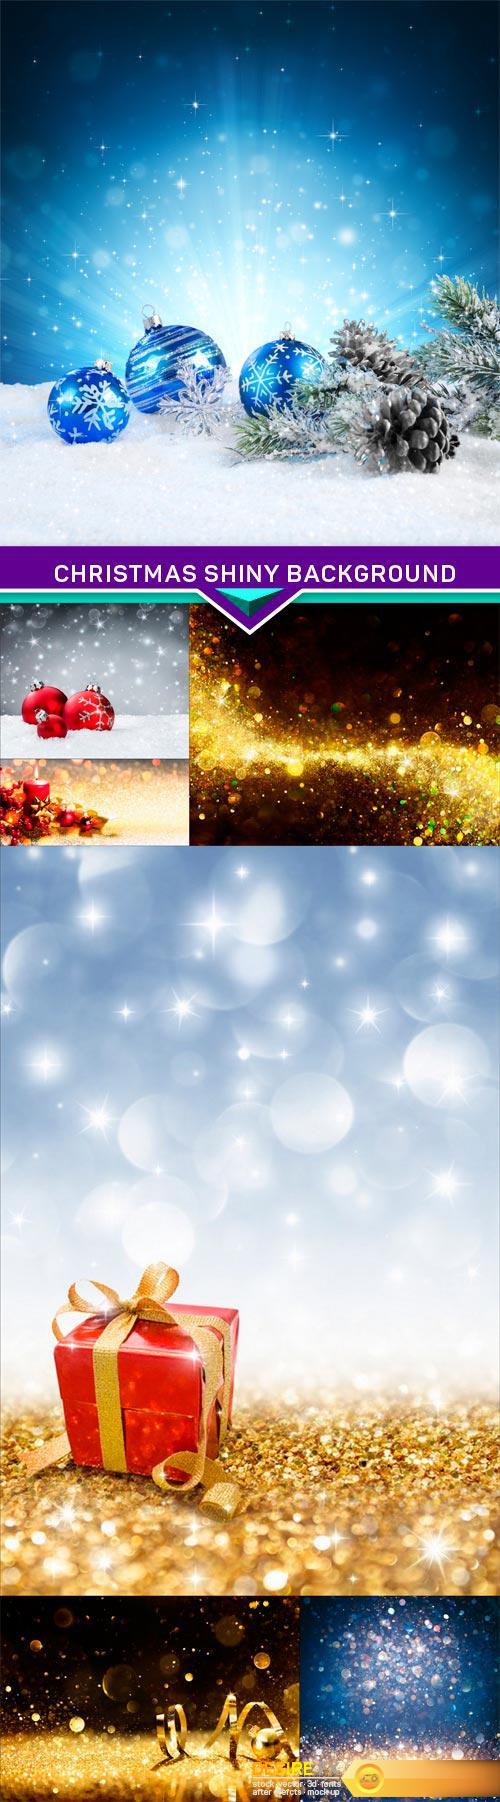 Christmas shiny background 7X JPEG